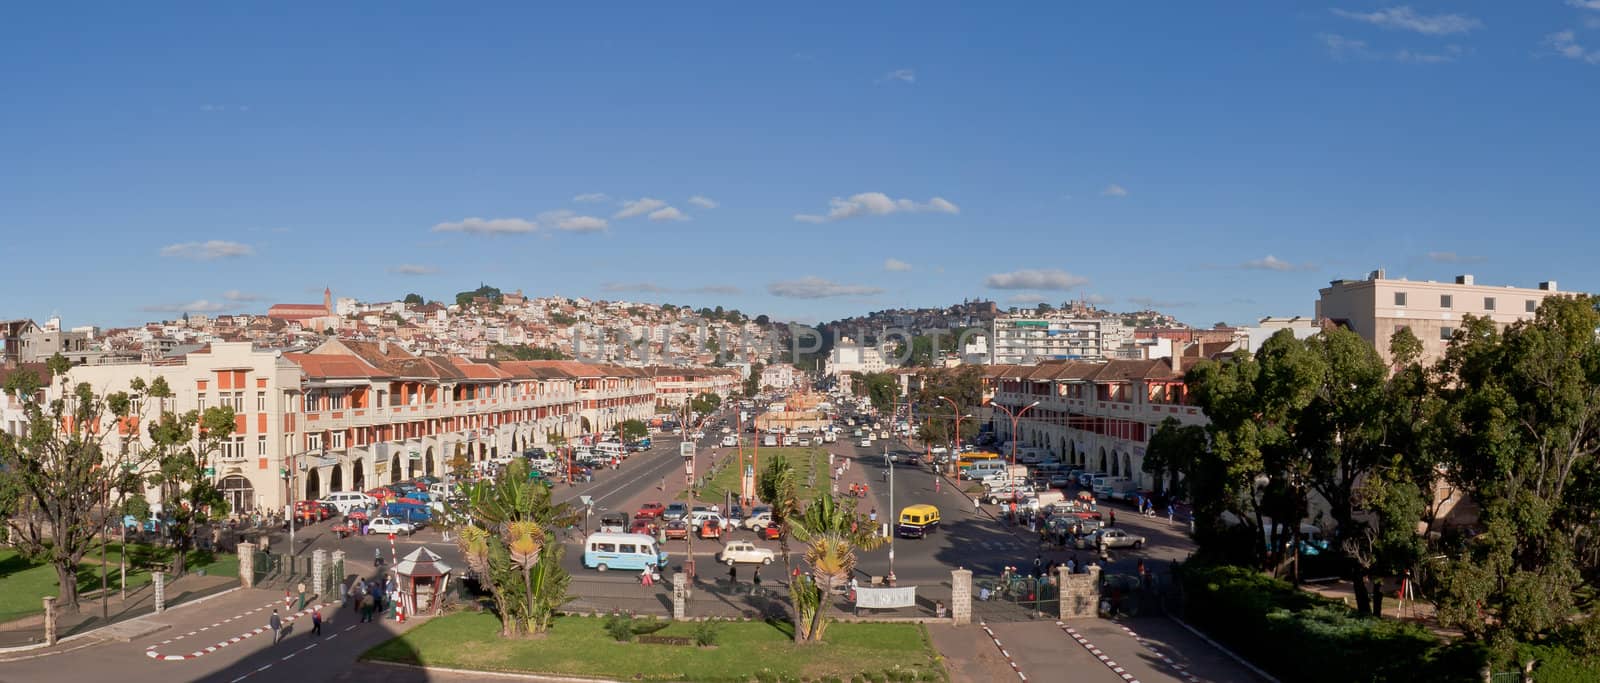 Antananarivo by pierivb